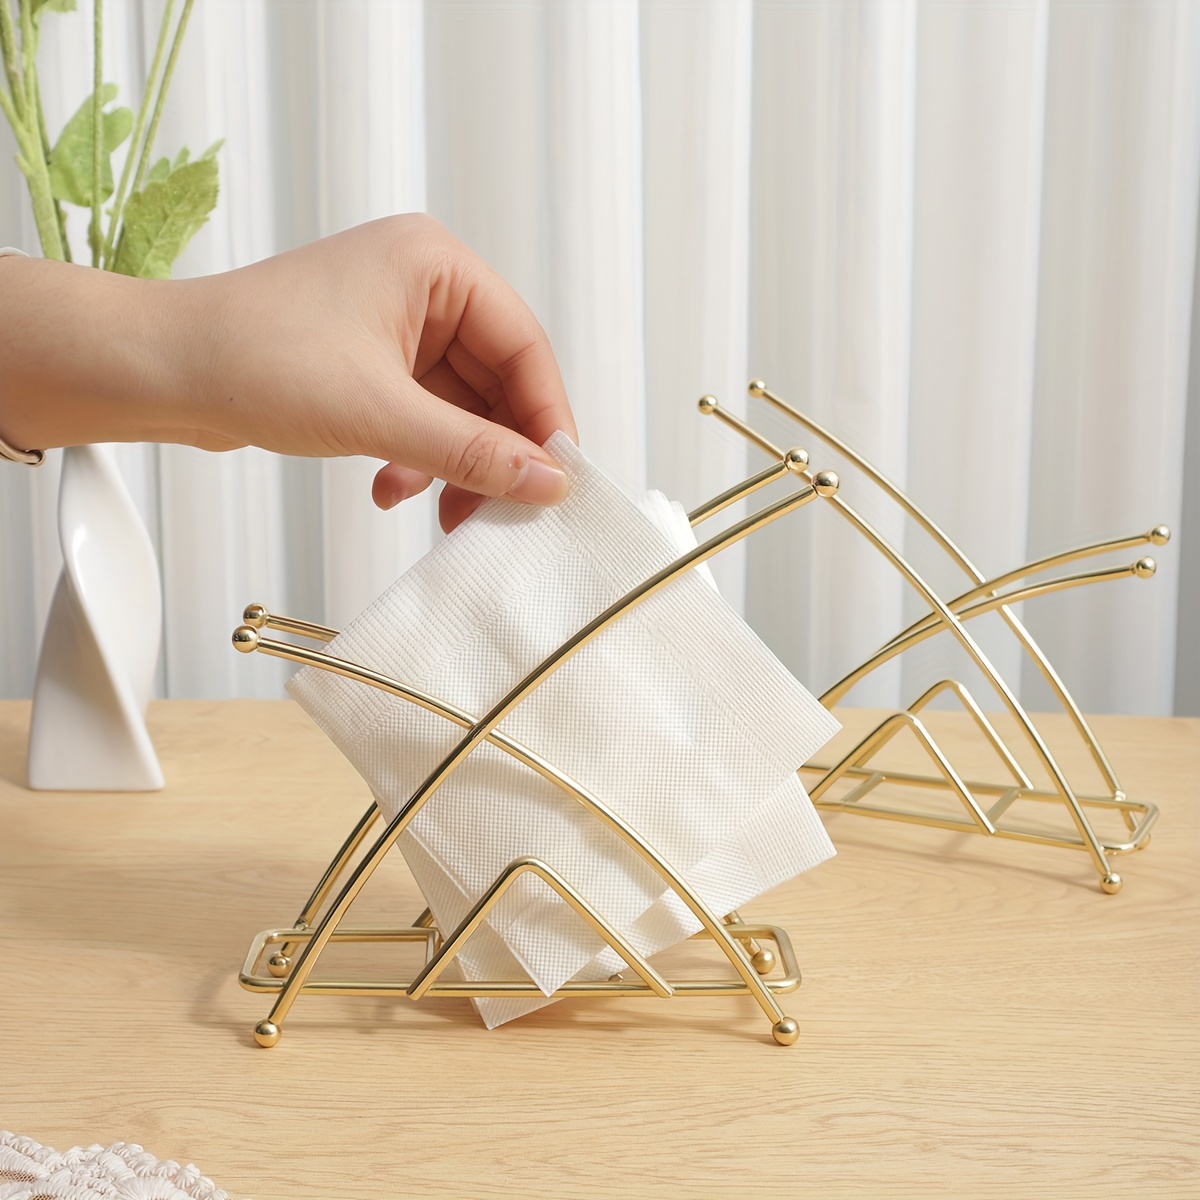 Servilletero de metal para mesa, servilletas verticales grandes,  dispensador de pañuelos de papel con diseño moderno de árbol para cocina